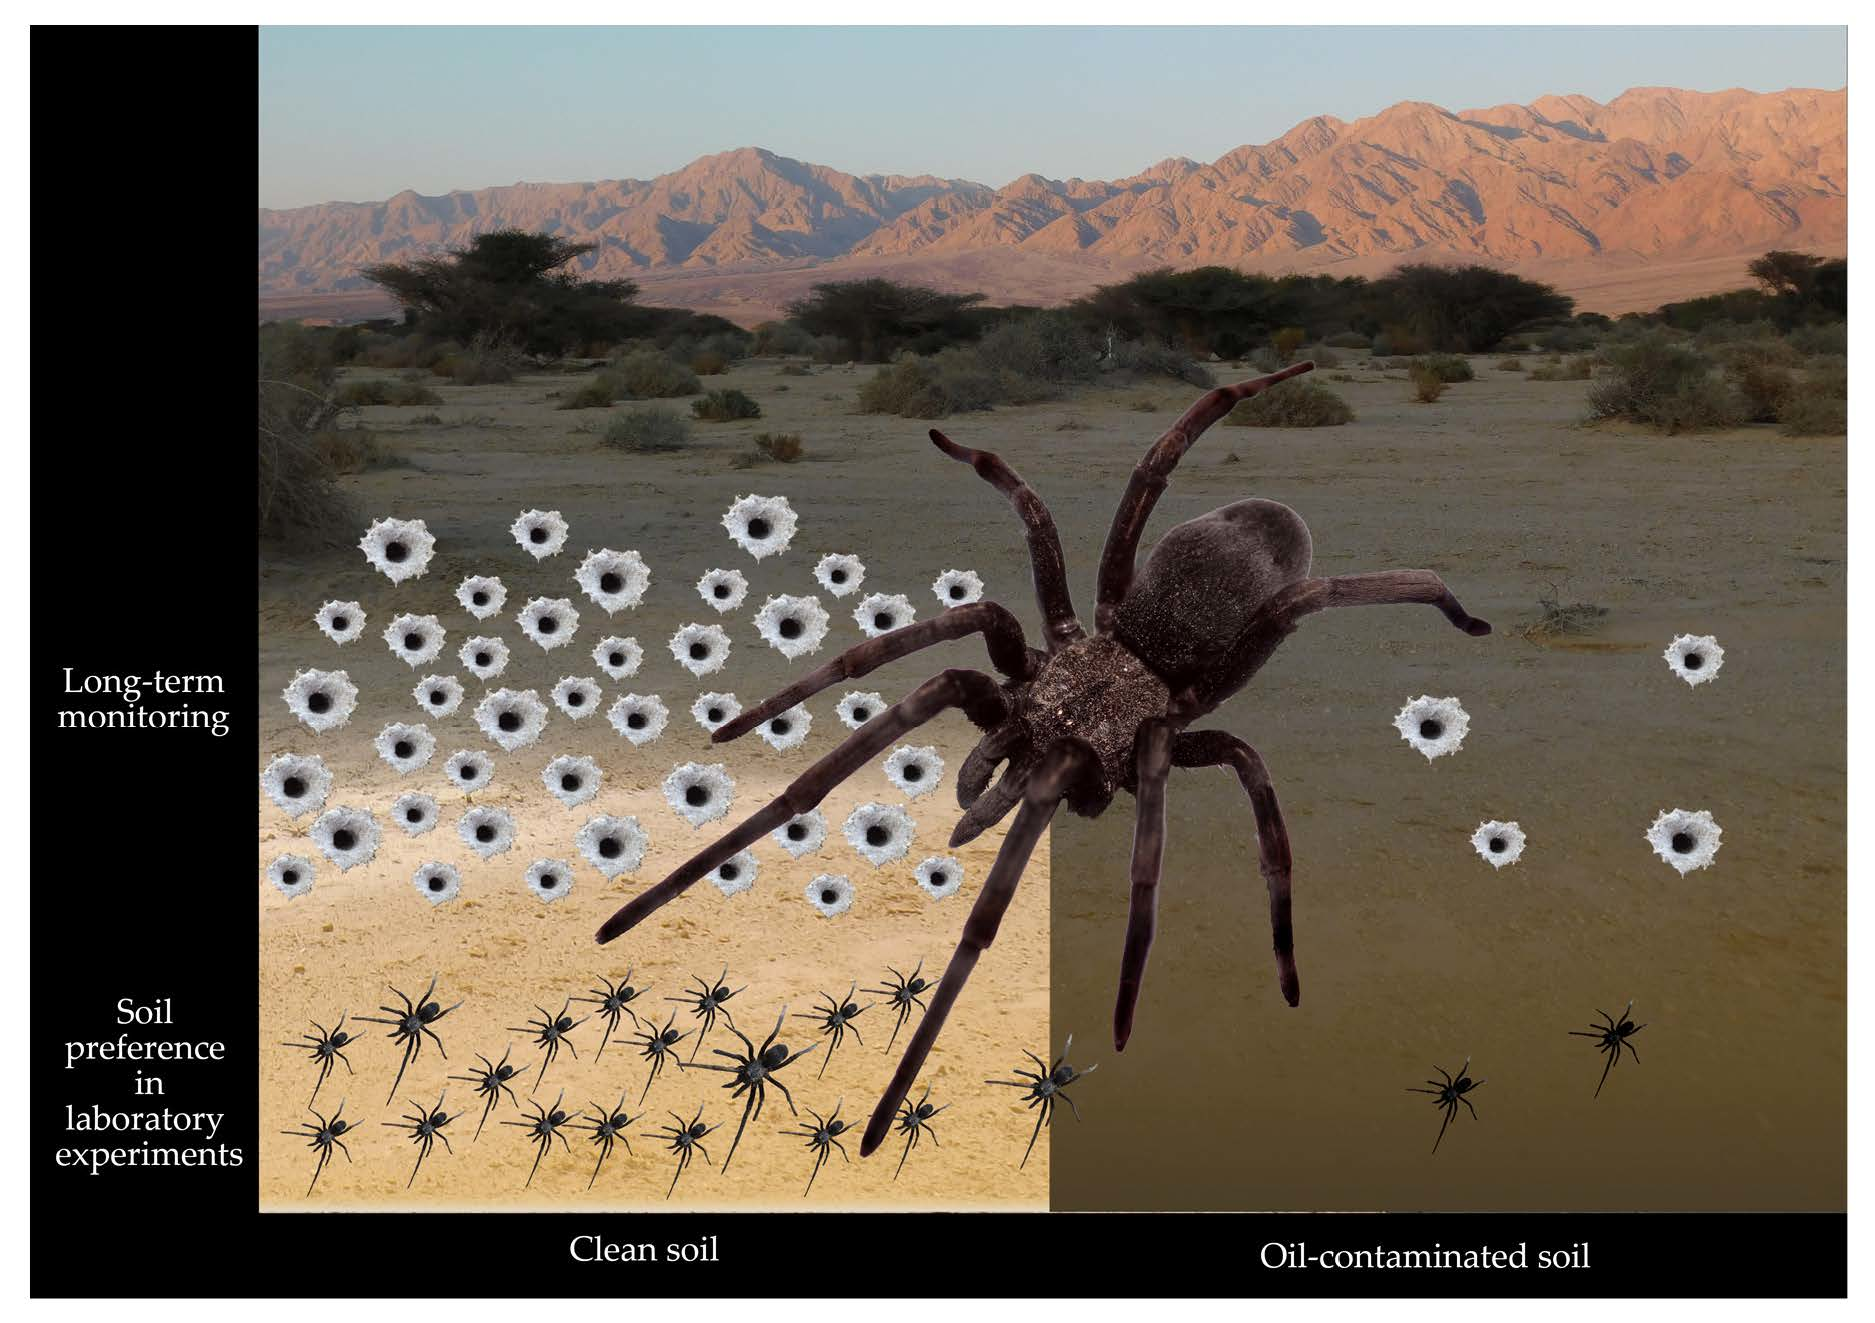 World's widest web? Flood-hit spiders find higher ground, Spiders